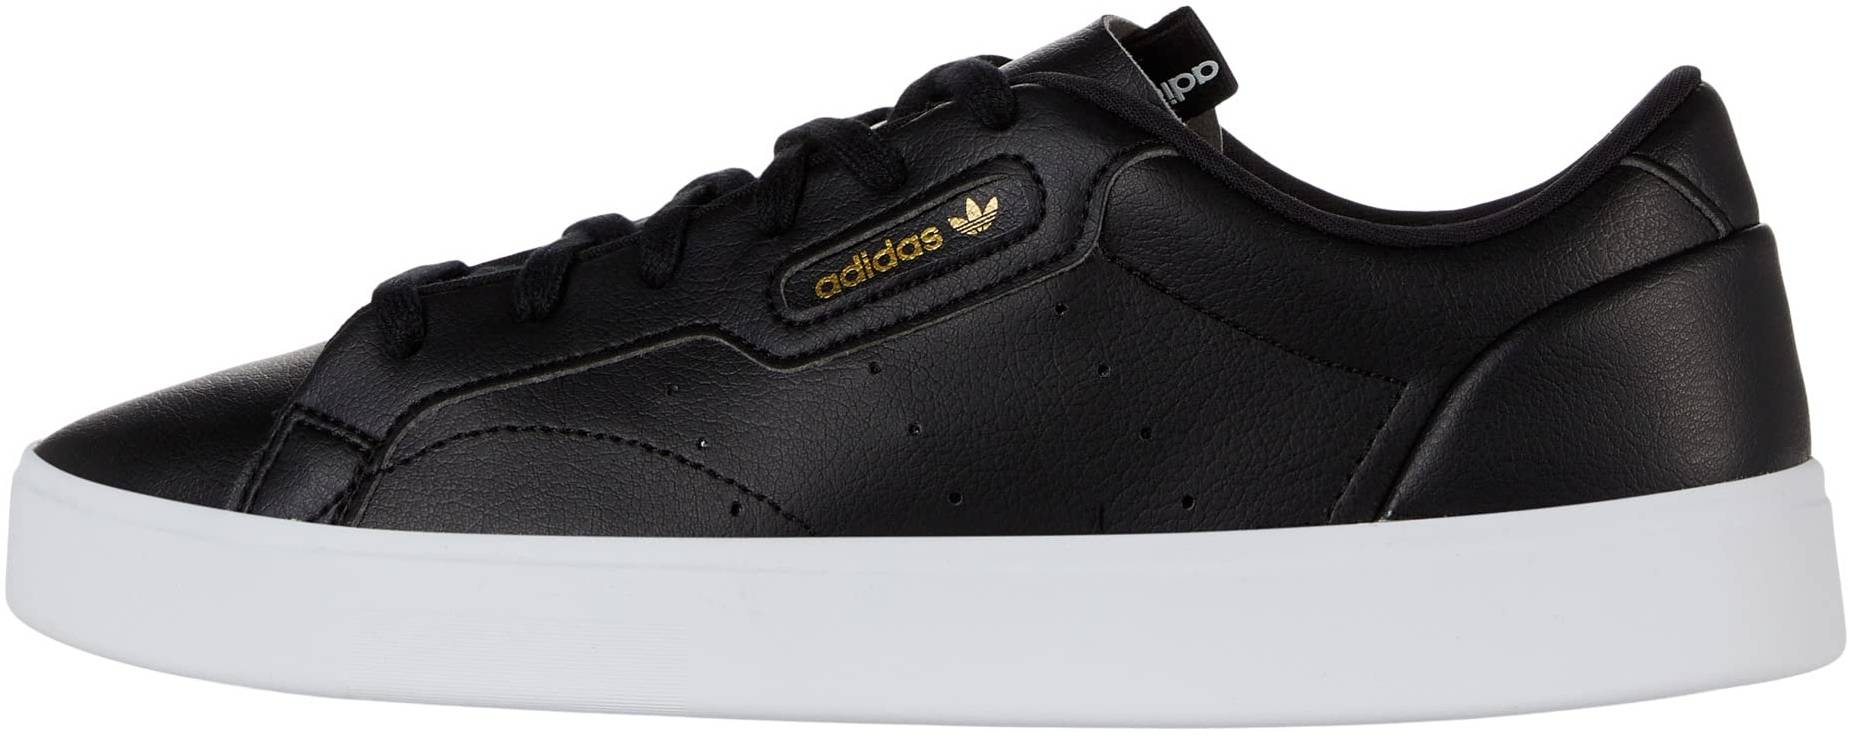 Adidas Sleek sneakers in 8 colors (only $45) | RunRepeat محل اسماك زينه